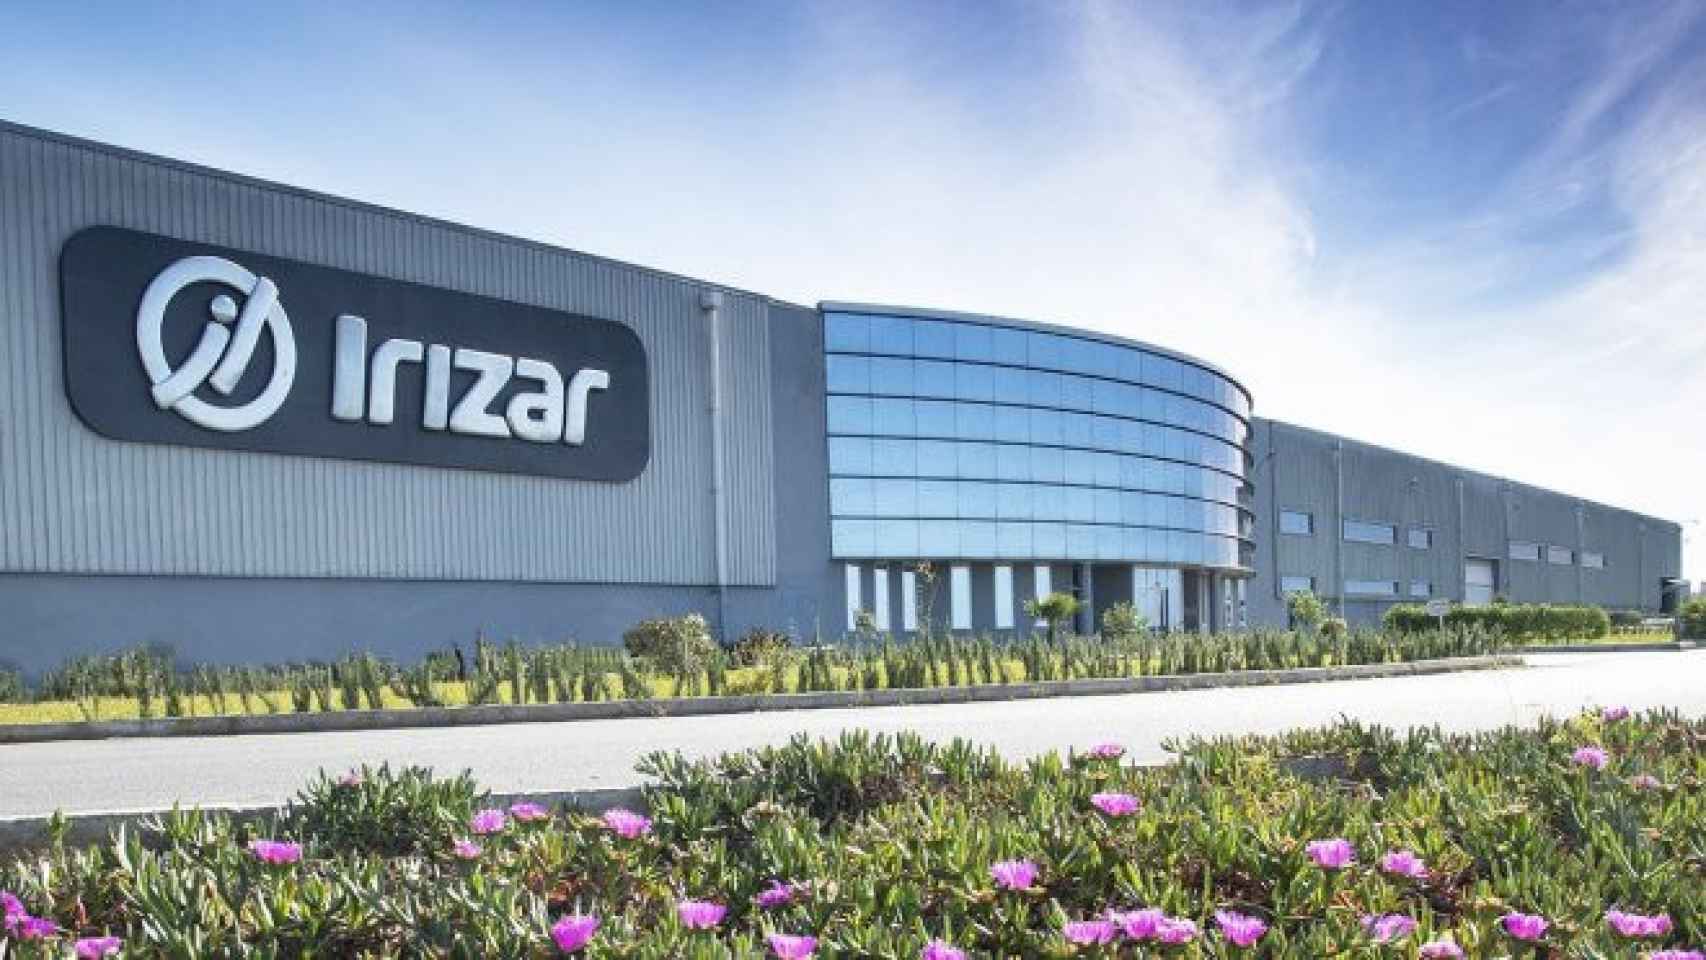 Instalaciones del grupo empresarial guipuzcoano Irizar. / Irizar